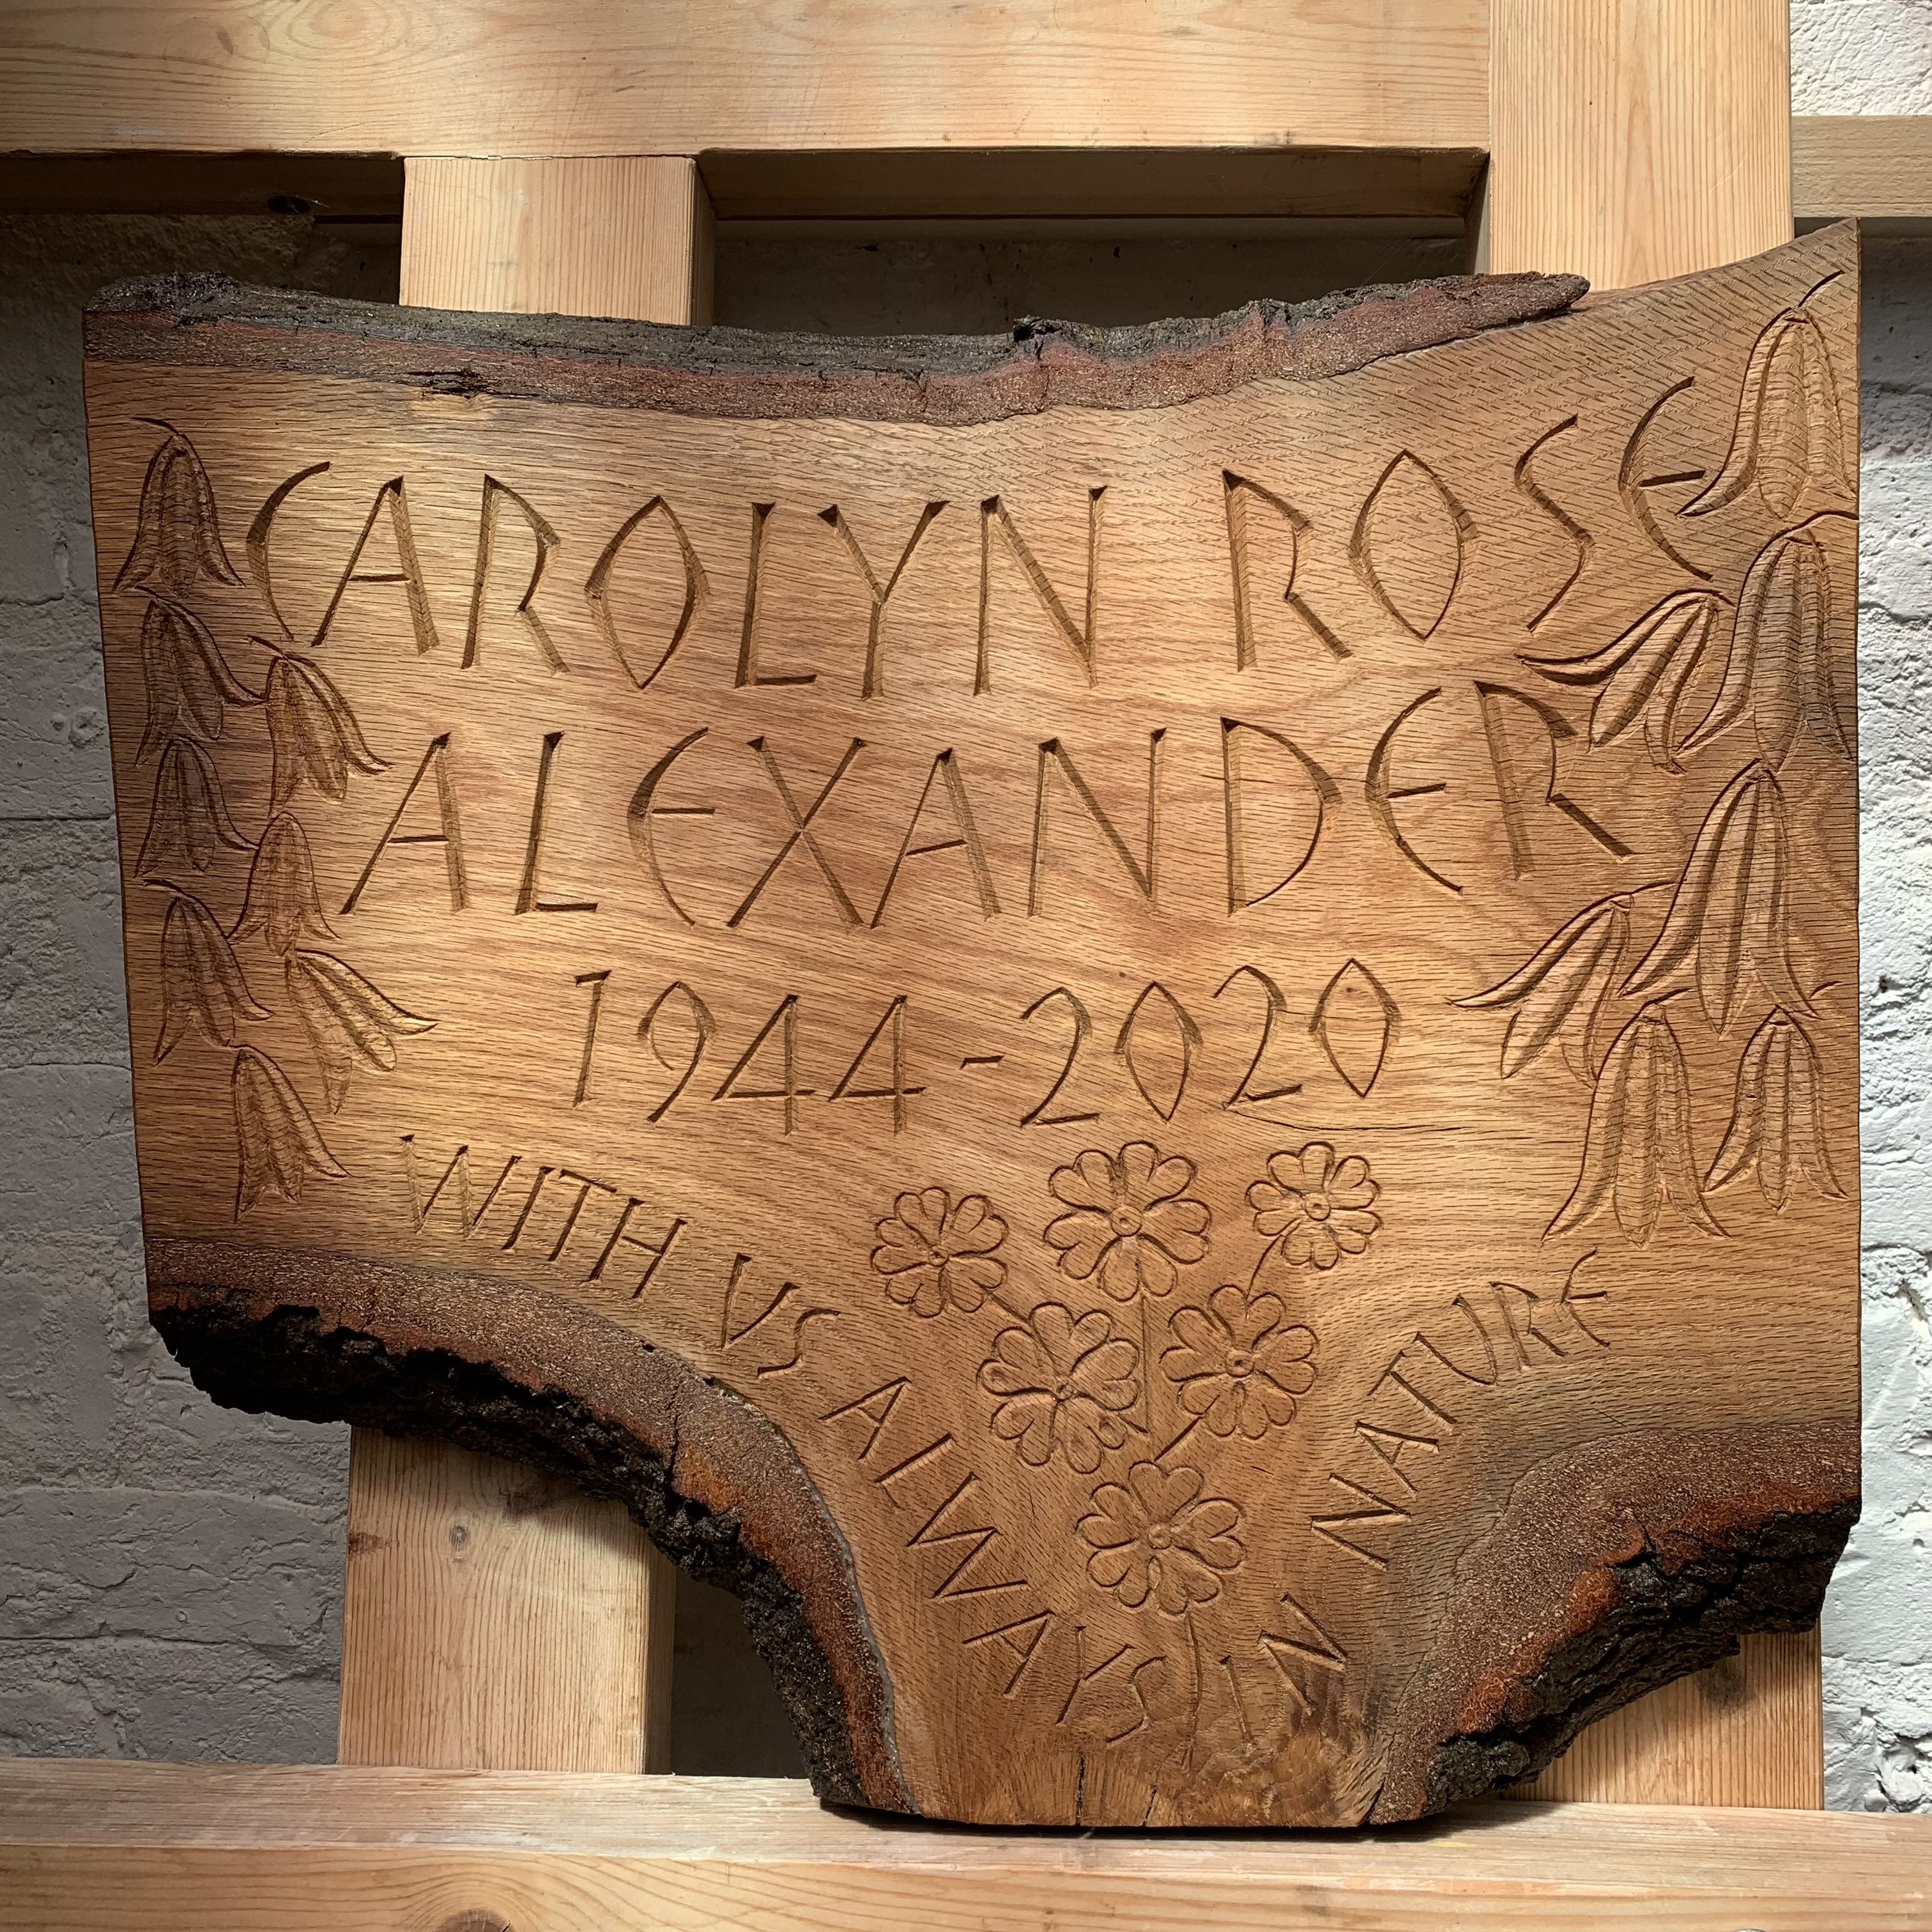 Oak plaque for a woodland burial